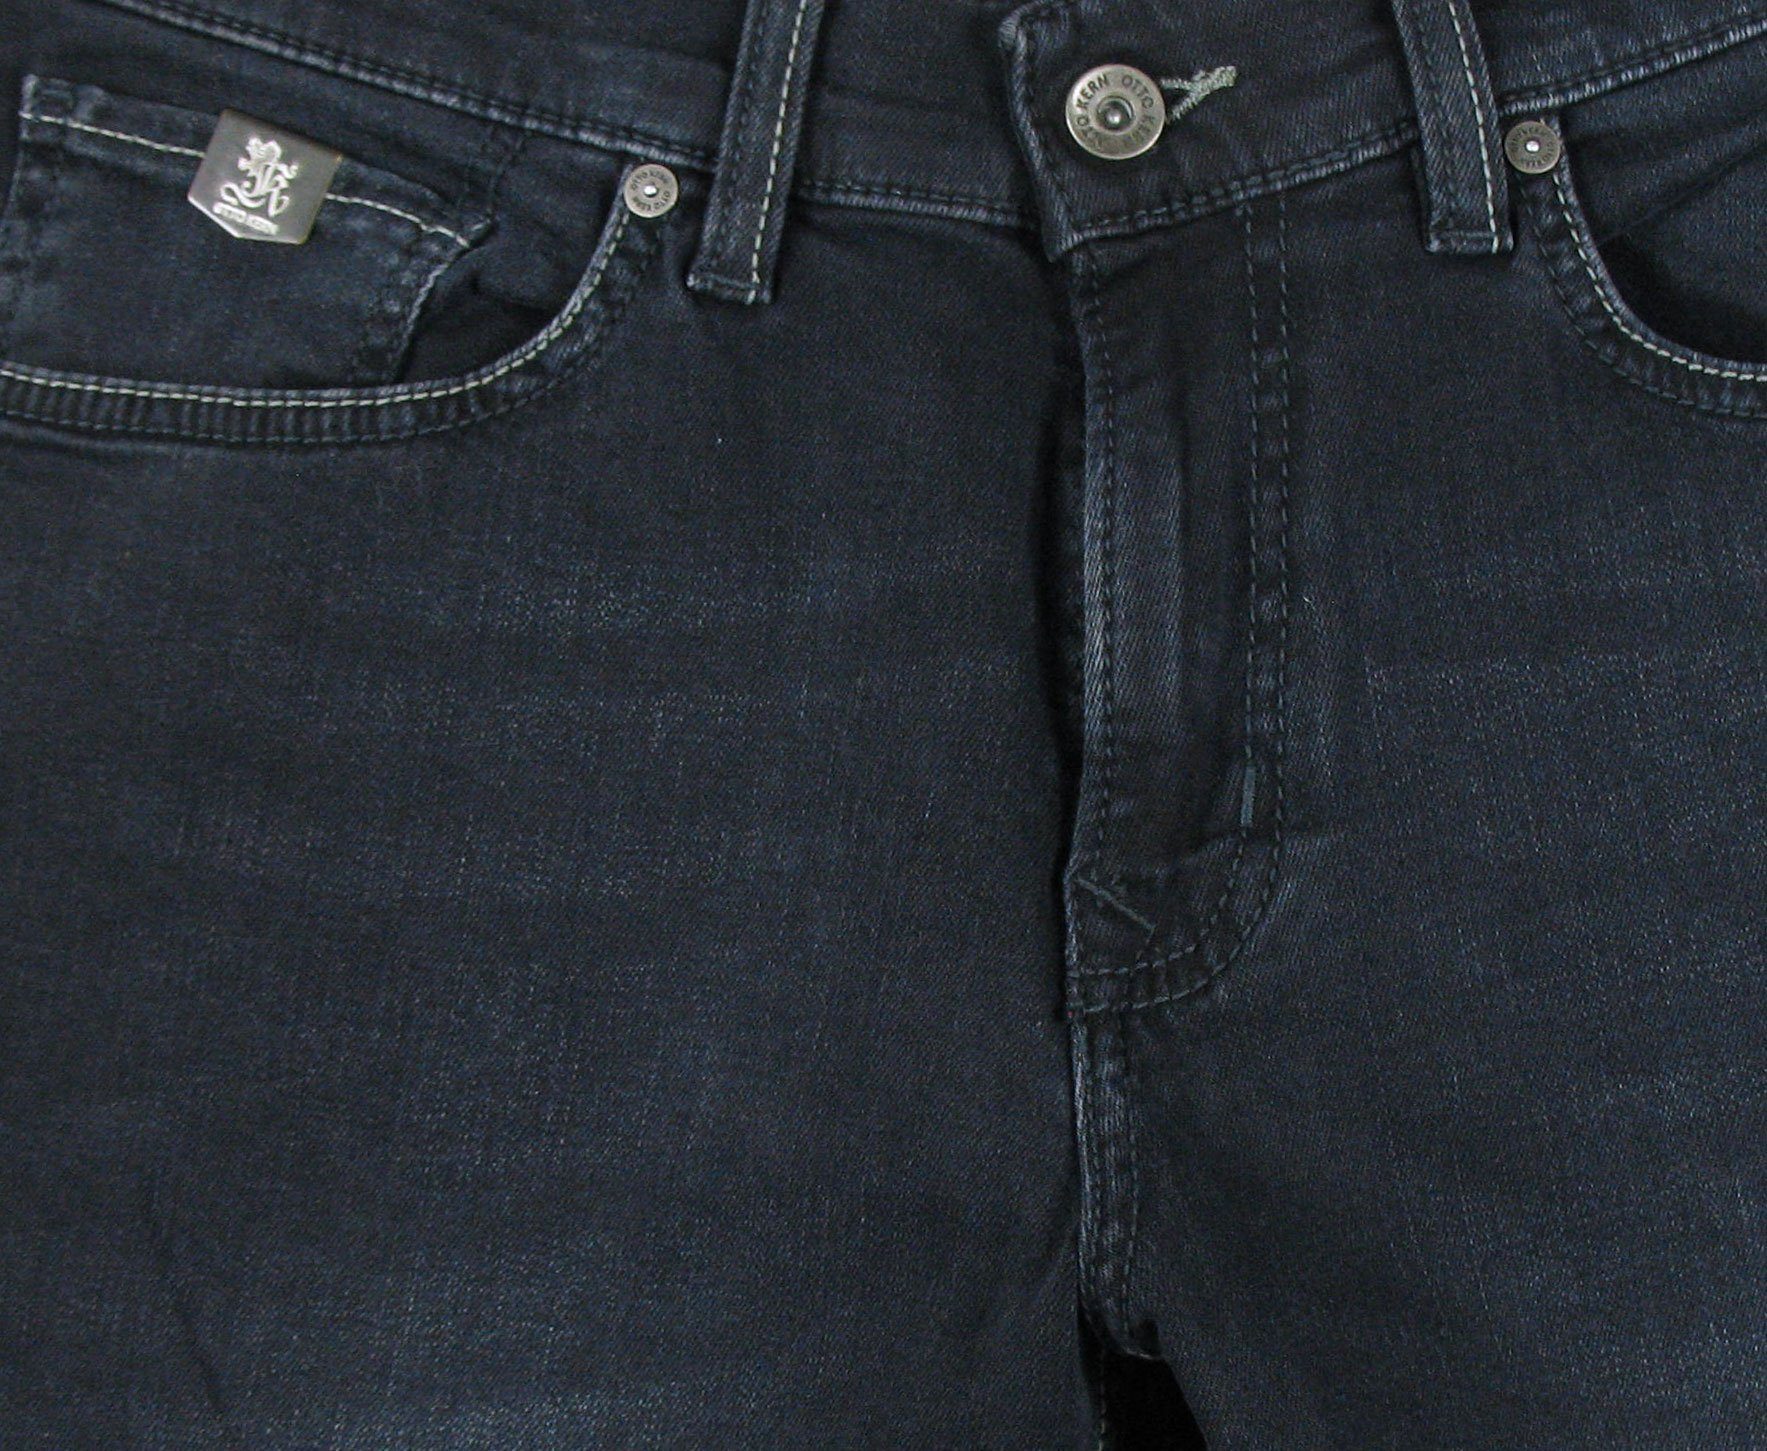 John Night Kern Pure Flex Kern Blue Denim 5-Pocket-Jeans Otto